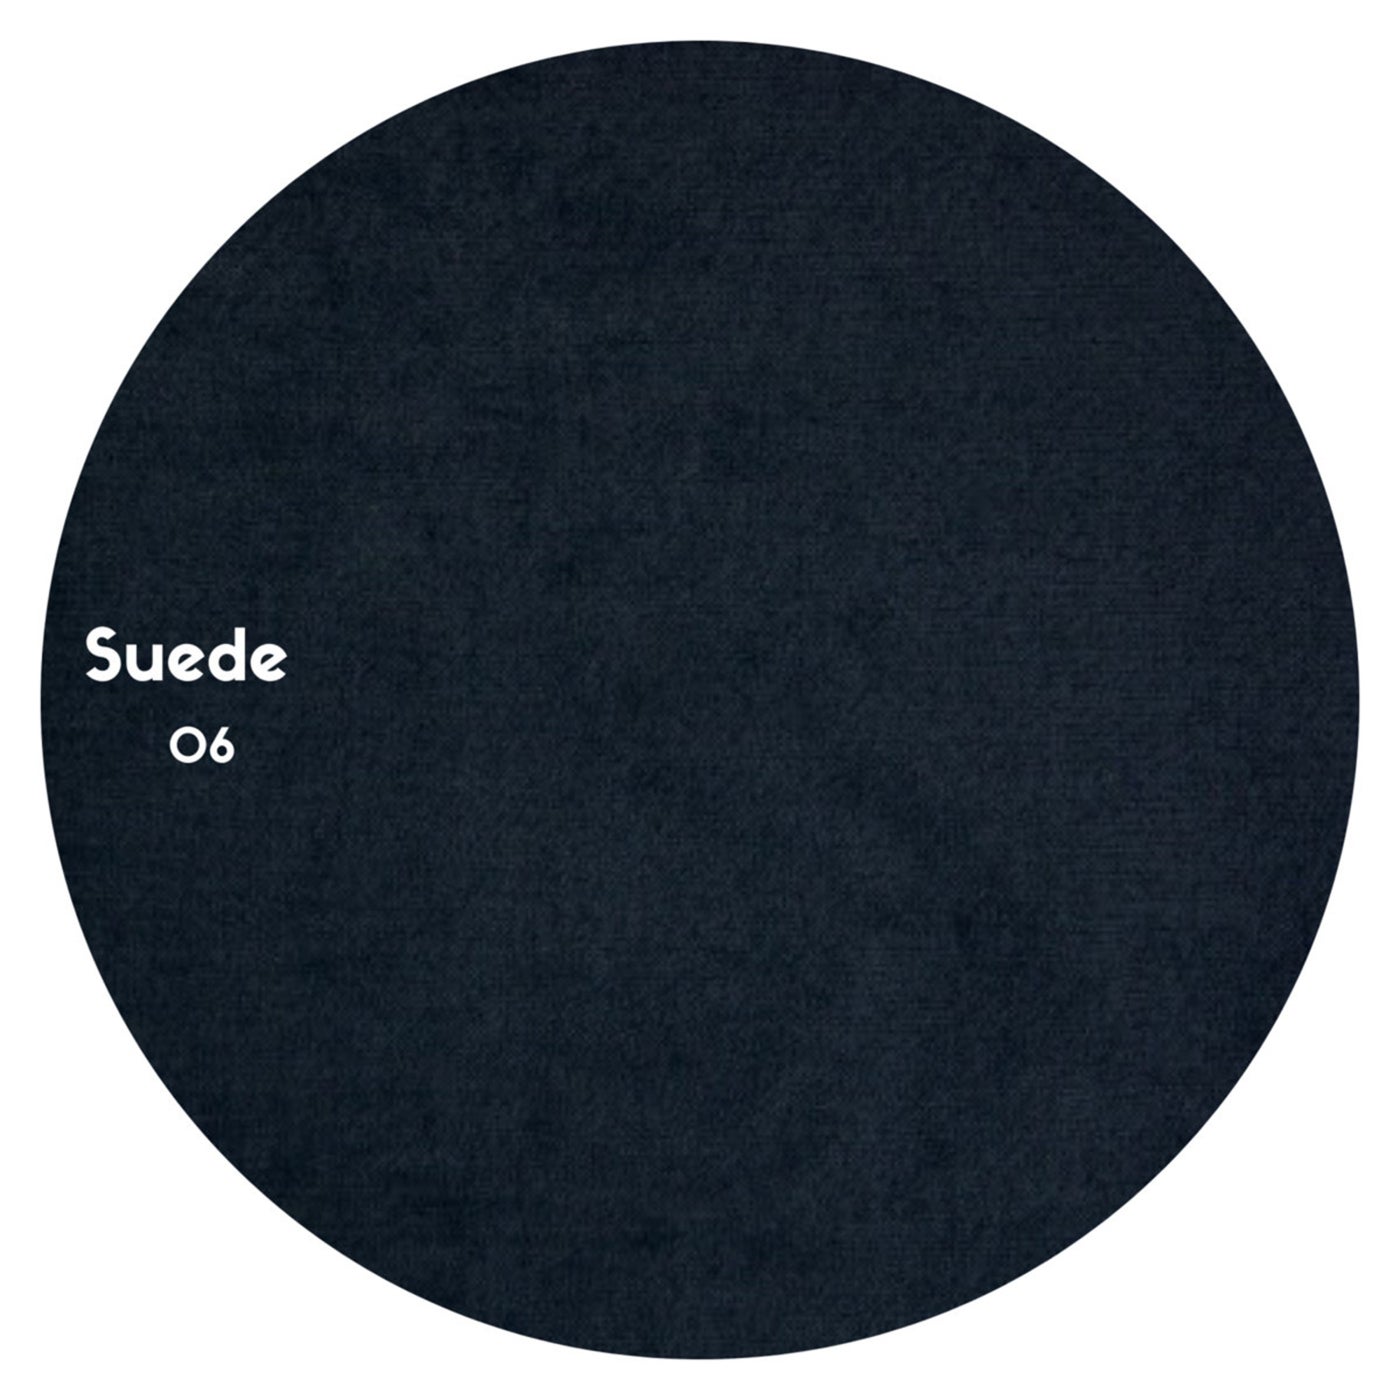 Suede - Suede 06 [Suede Recordings]